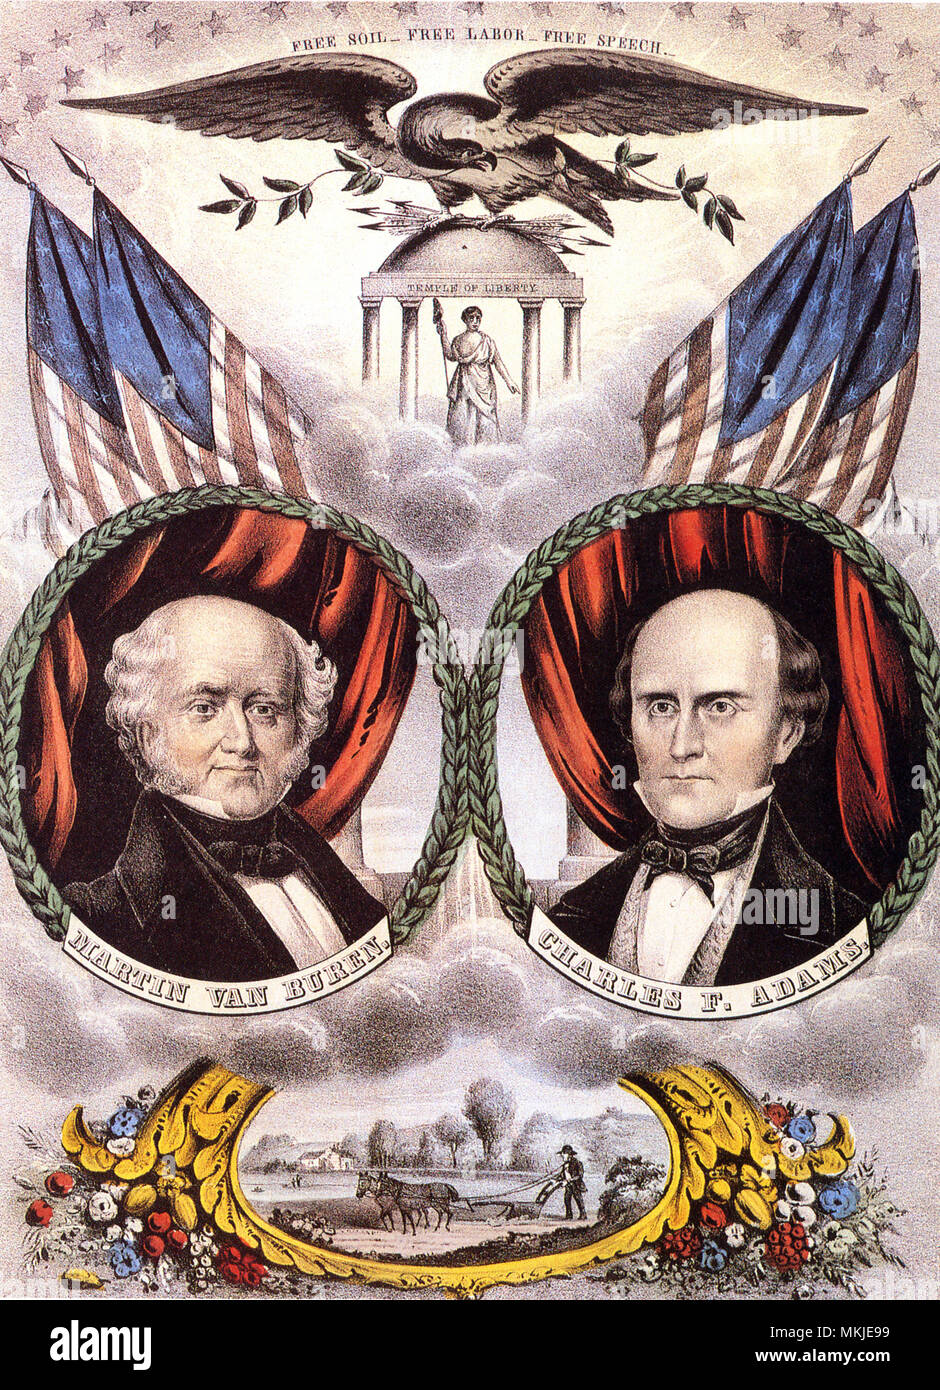 Presidential Ticket, Buren and Adams 1848 Stock Photo